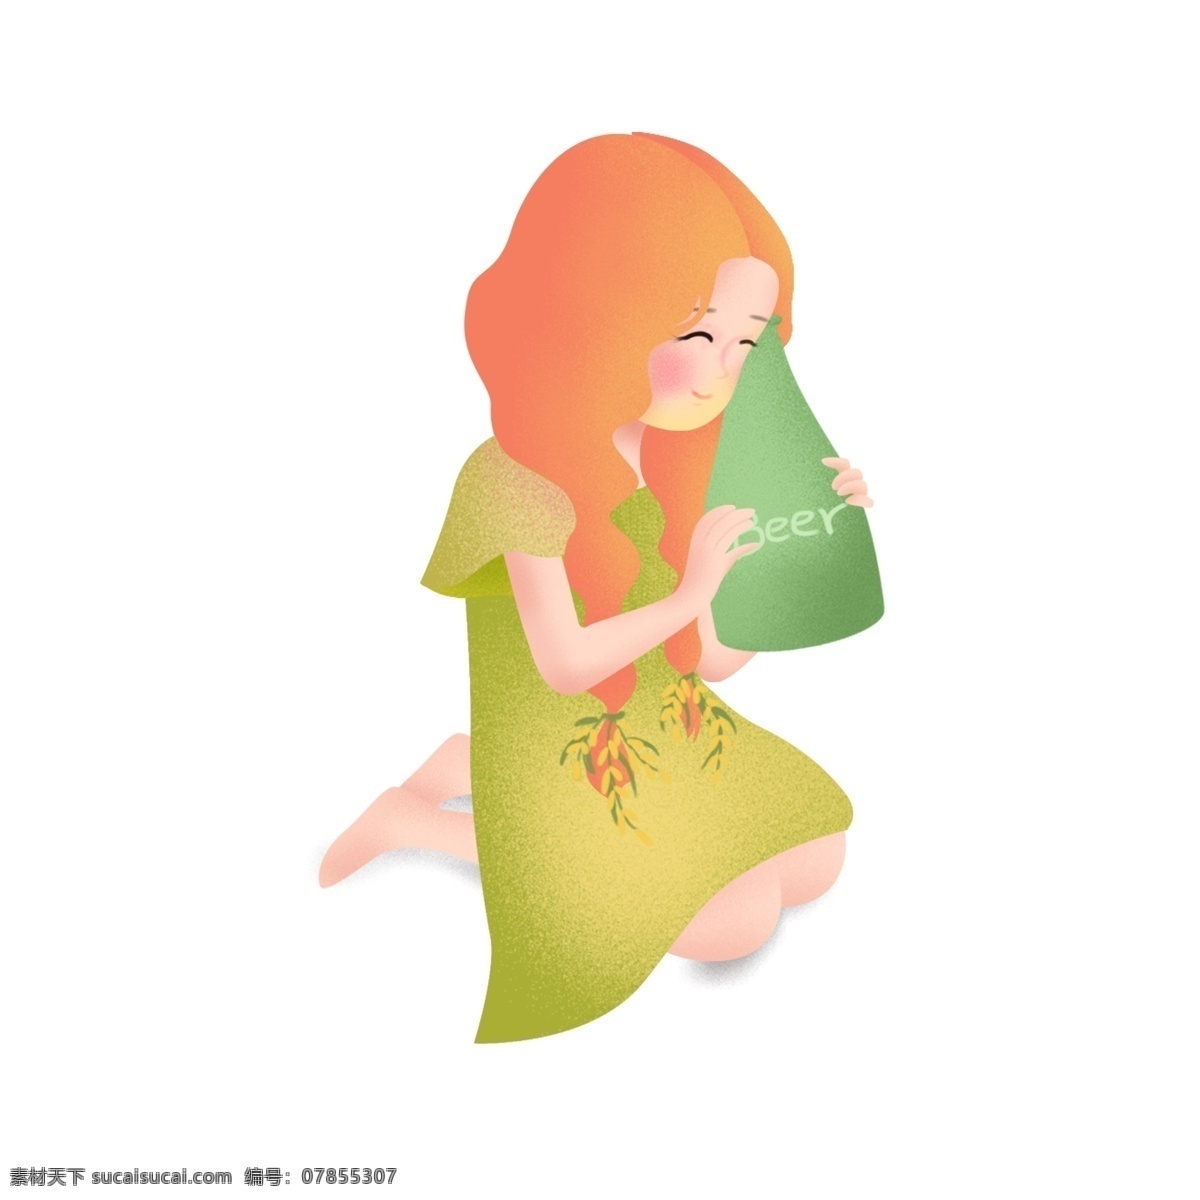 喝 啤酒 可爱 女孩 卡通 背景 休闲 元素 小女孩 长发 绿色裙子